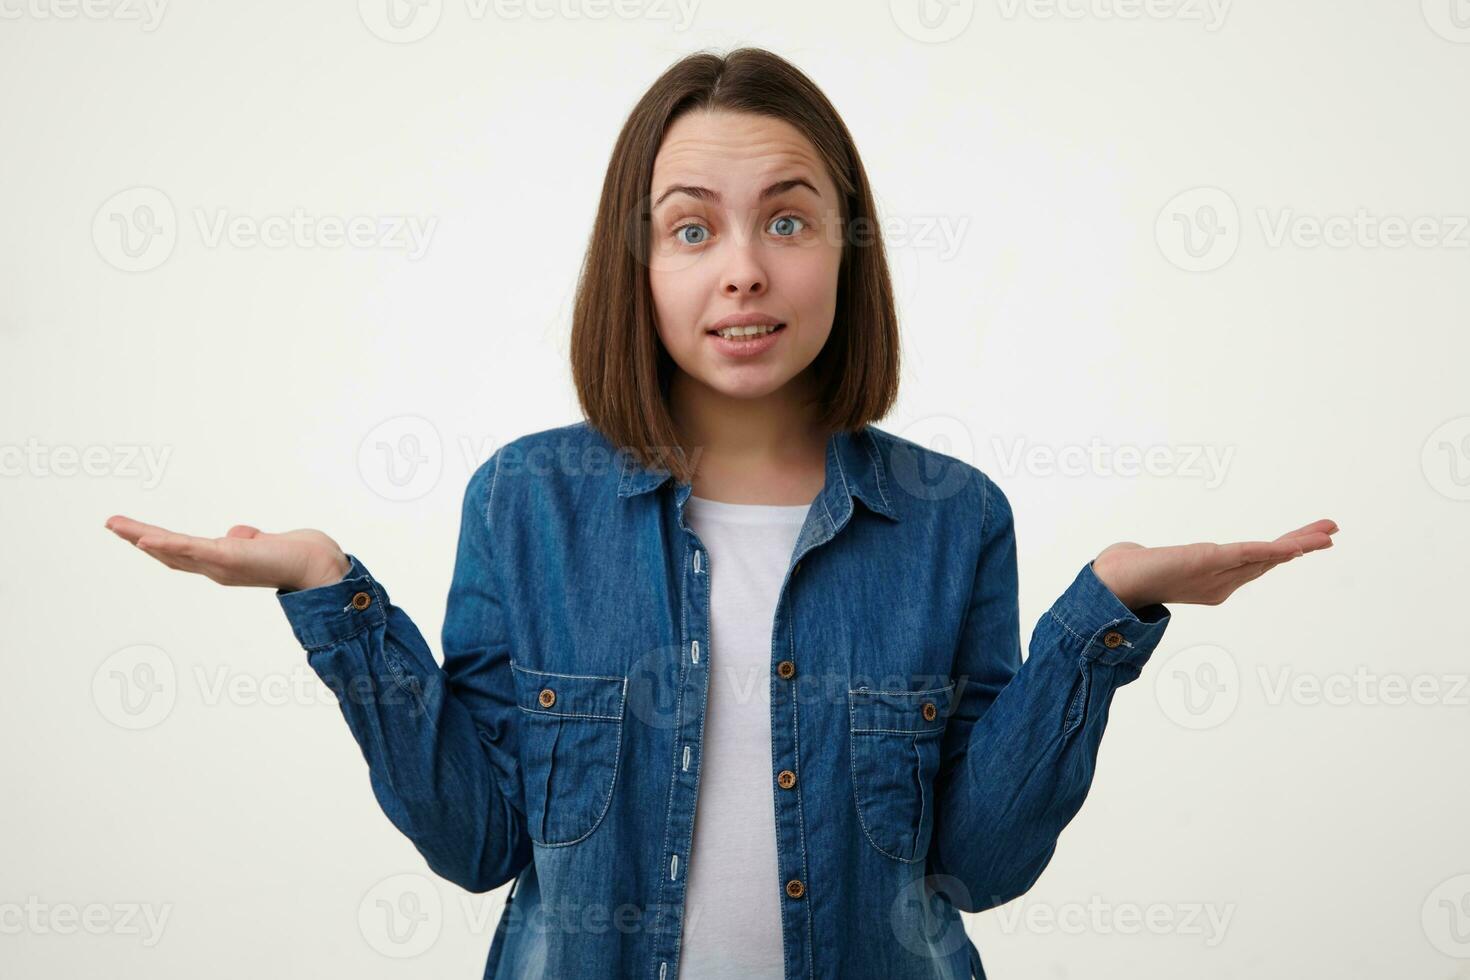 förbryllad ung härlig blåögd brunett kvinna med guppa frisyr höjning förvirrat händer medan ser förvånat på kamera, stående över vit bakgrund foto